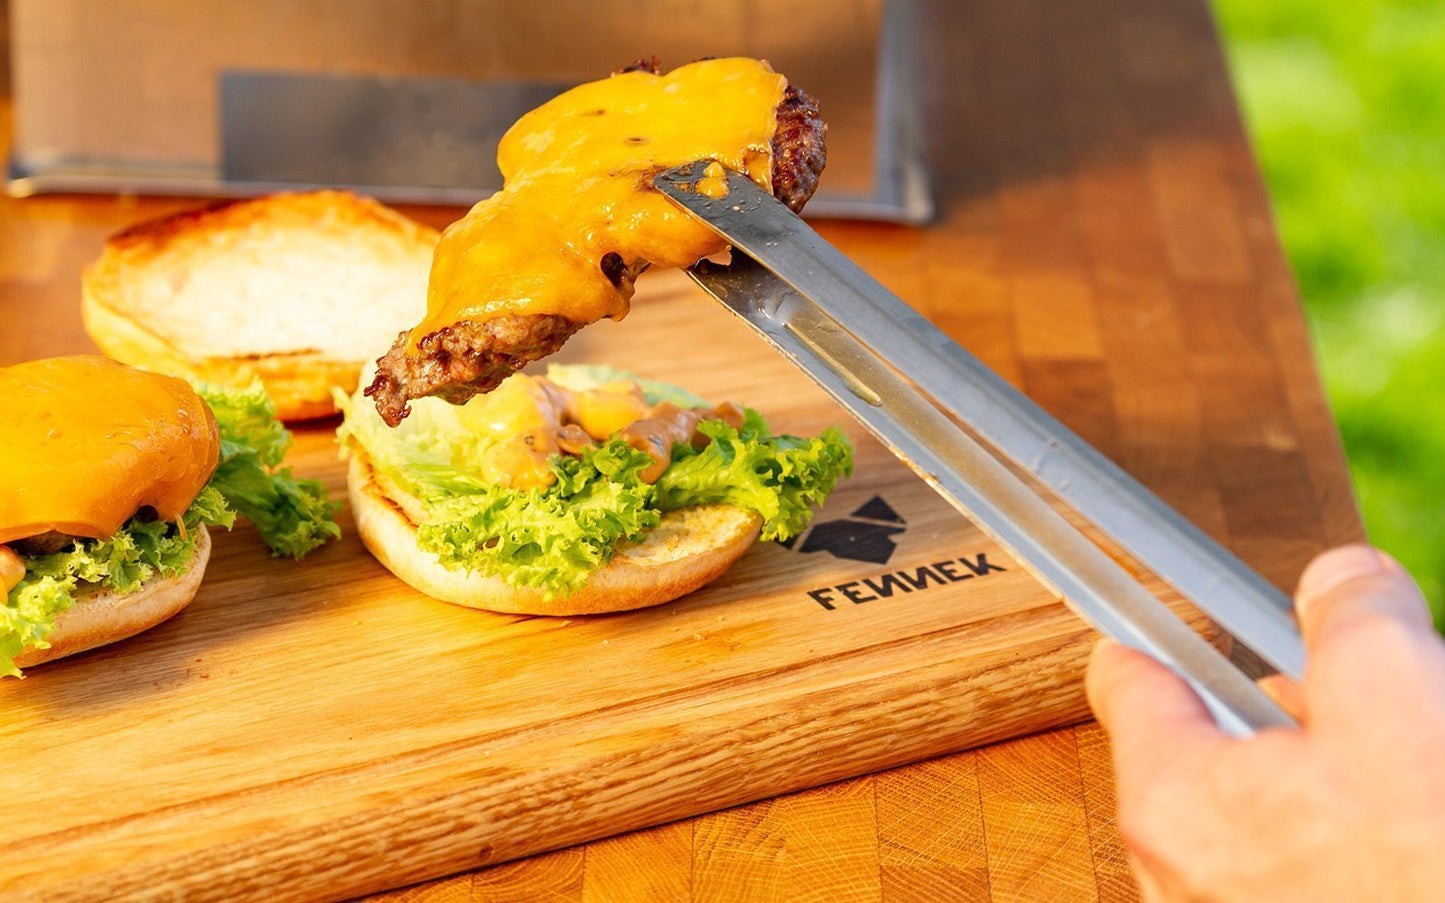 Mit Käse überbackenes Hamburger Patty wird mit Grillzange aus Edelstahl auf ein Brötchen gelegt, darunter ein Holzbrett mit Fennek Logo-Branding.